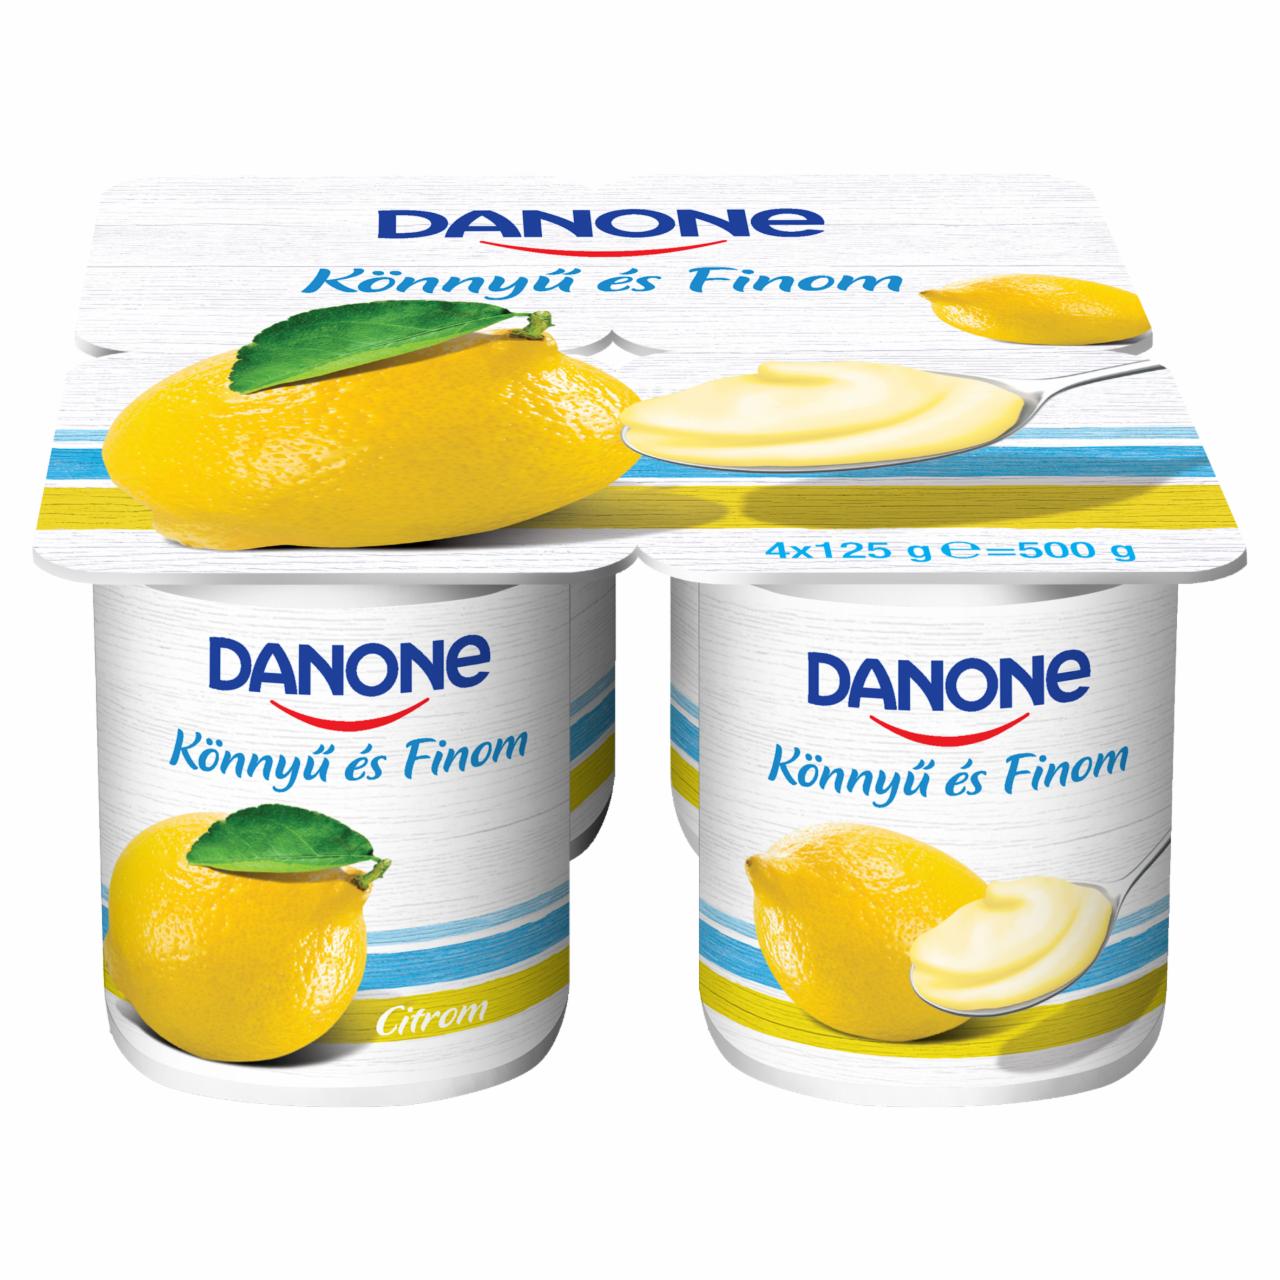 Képek - Danone citromízű, élőflórás, zsírszegény joghurt 4 x 125 g